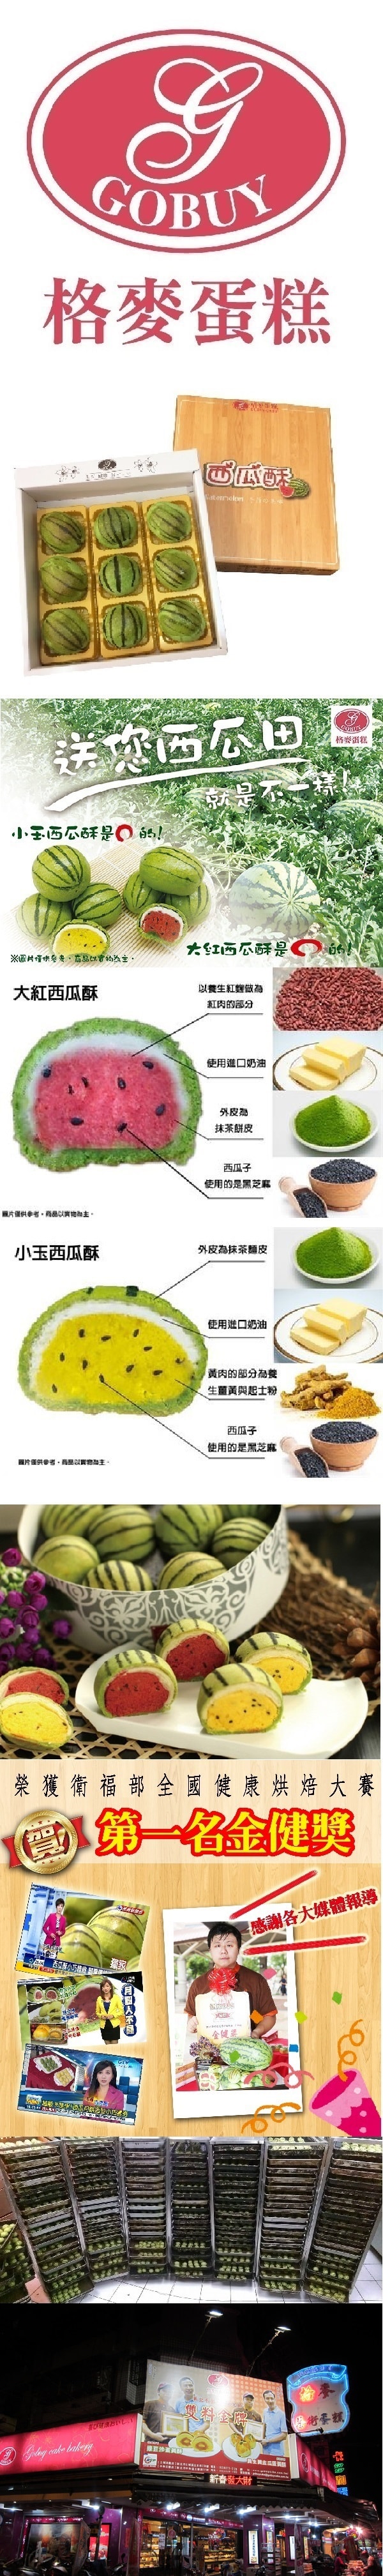 [台湾直邮]台湾格麦蛋糕 健康烘焙金牌奖 西瓜酥 450g 9入